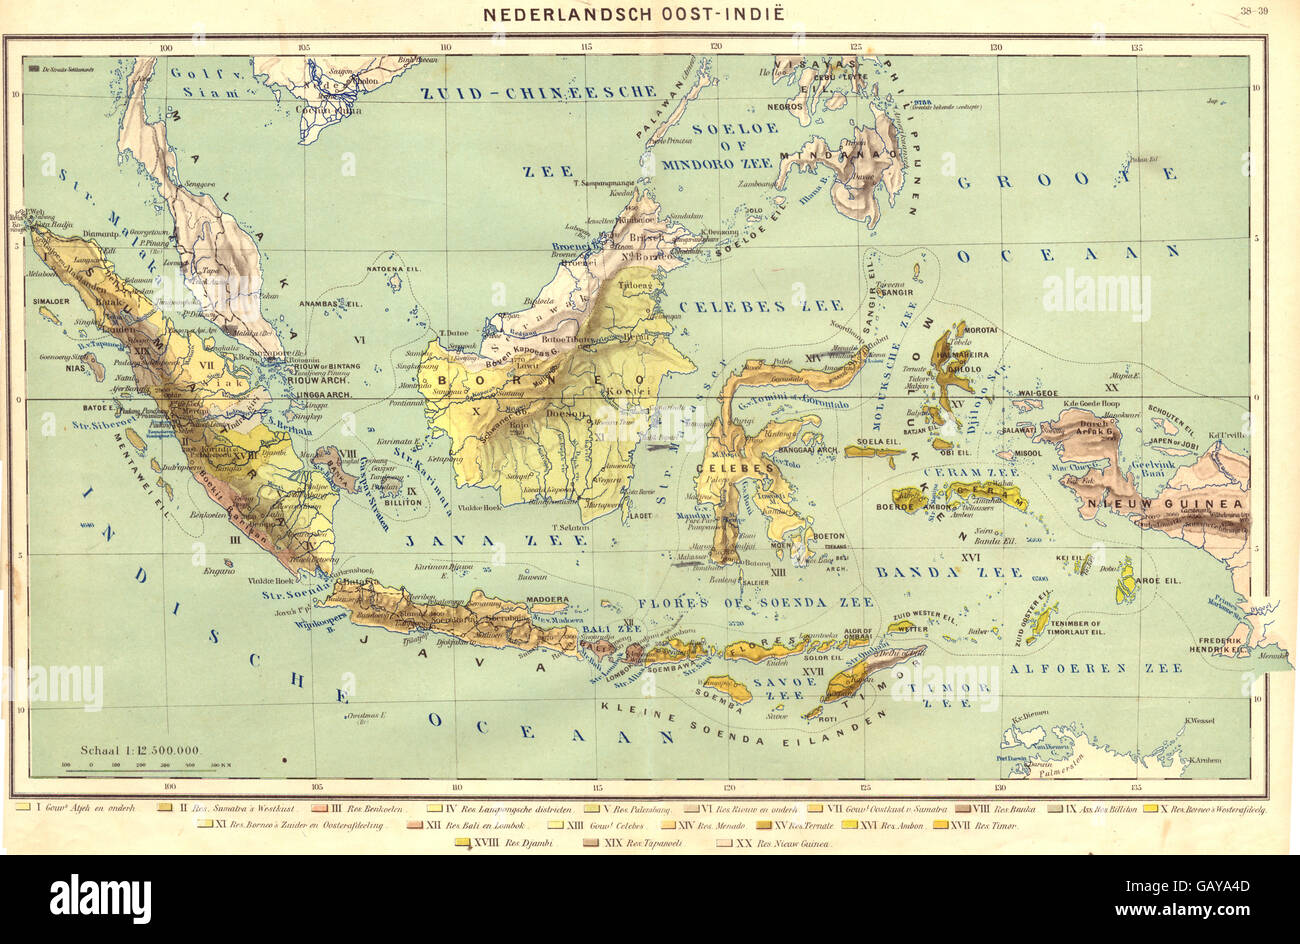 INDONESIA: Nederlandsch oost- Indië, 1922 vintage map Stock Photo